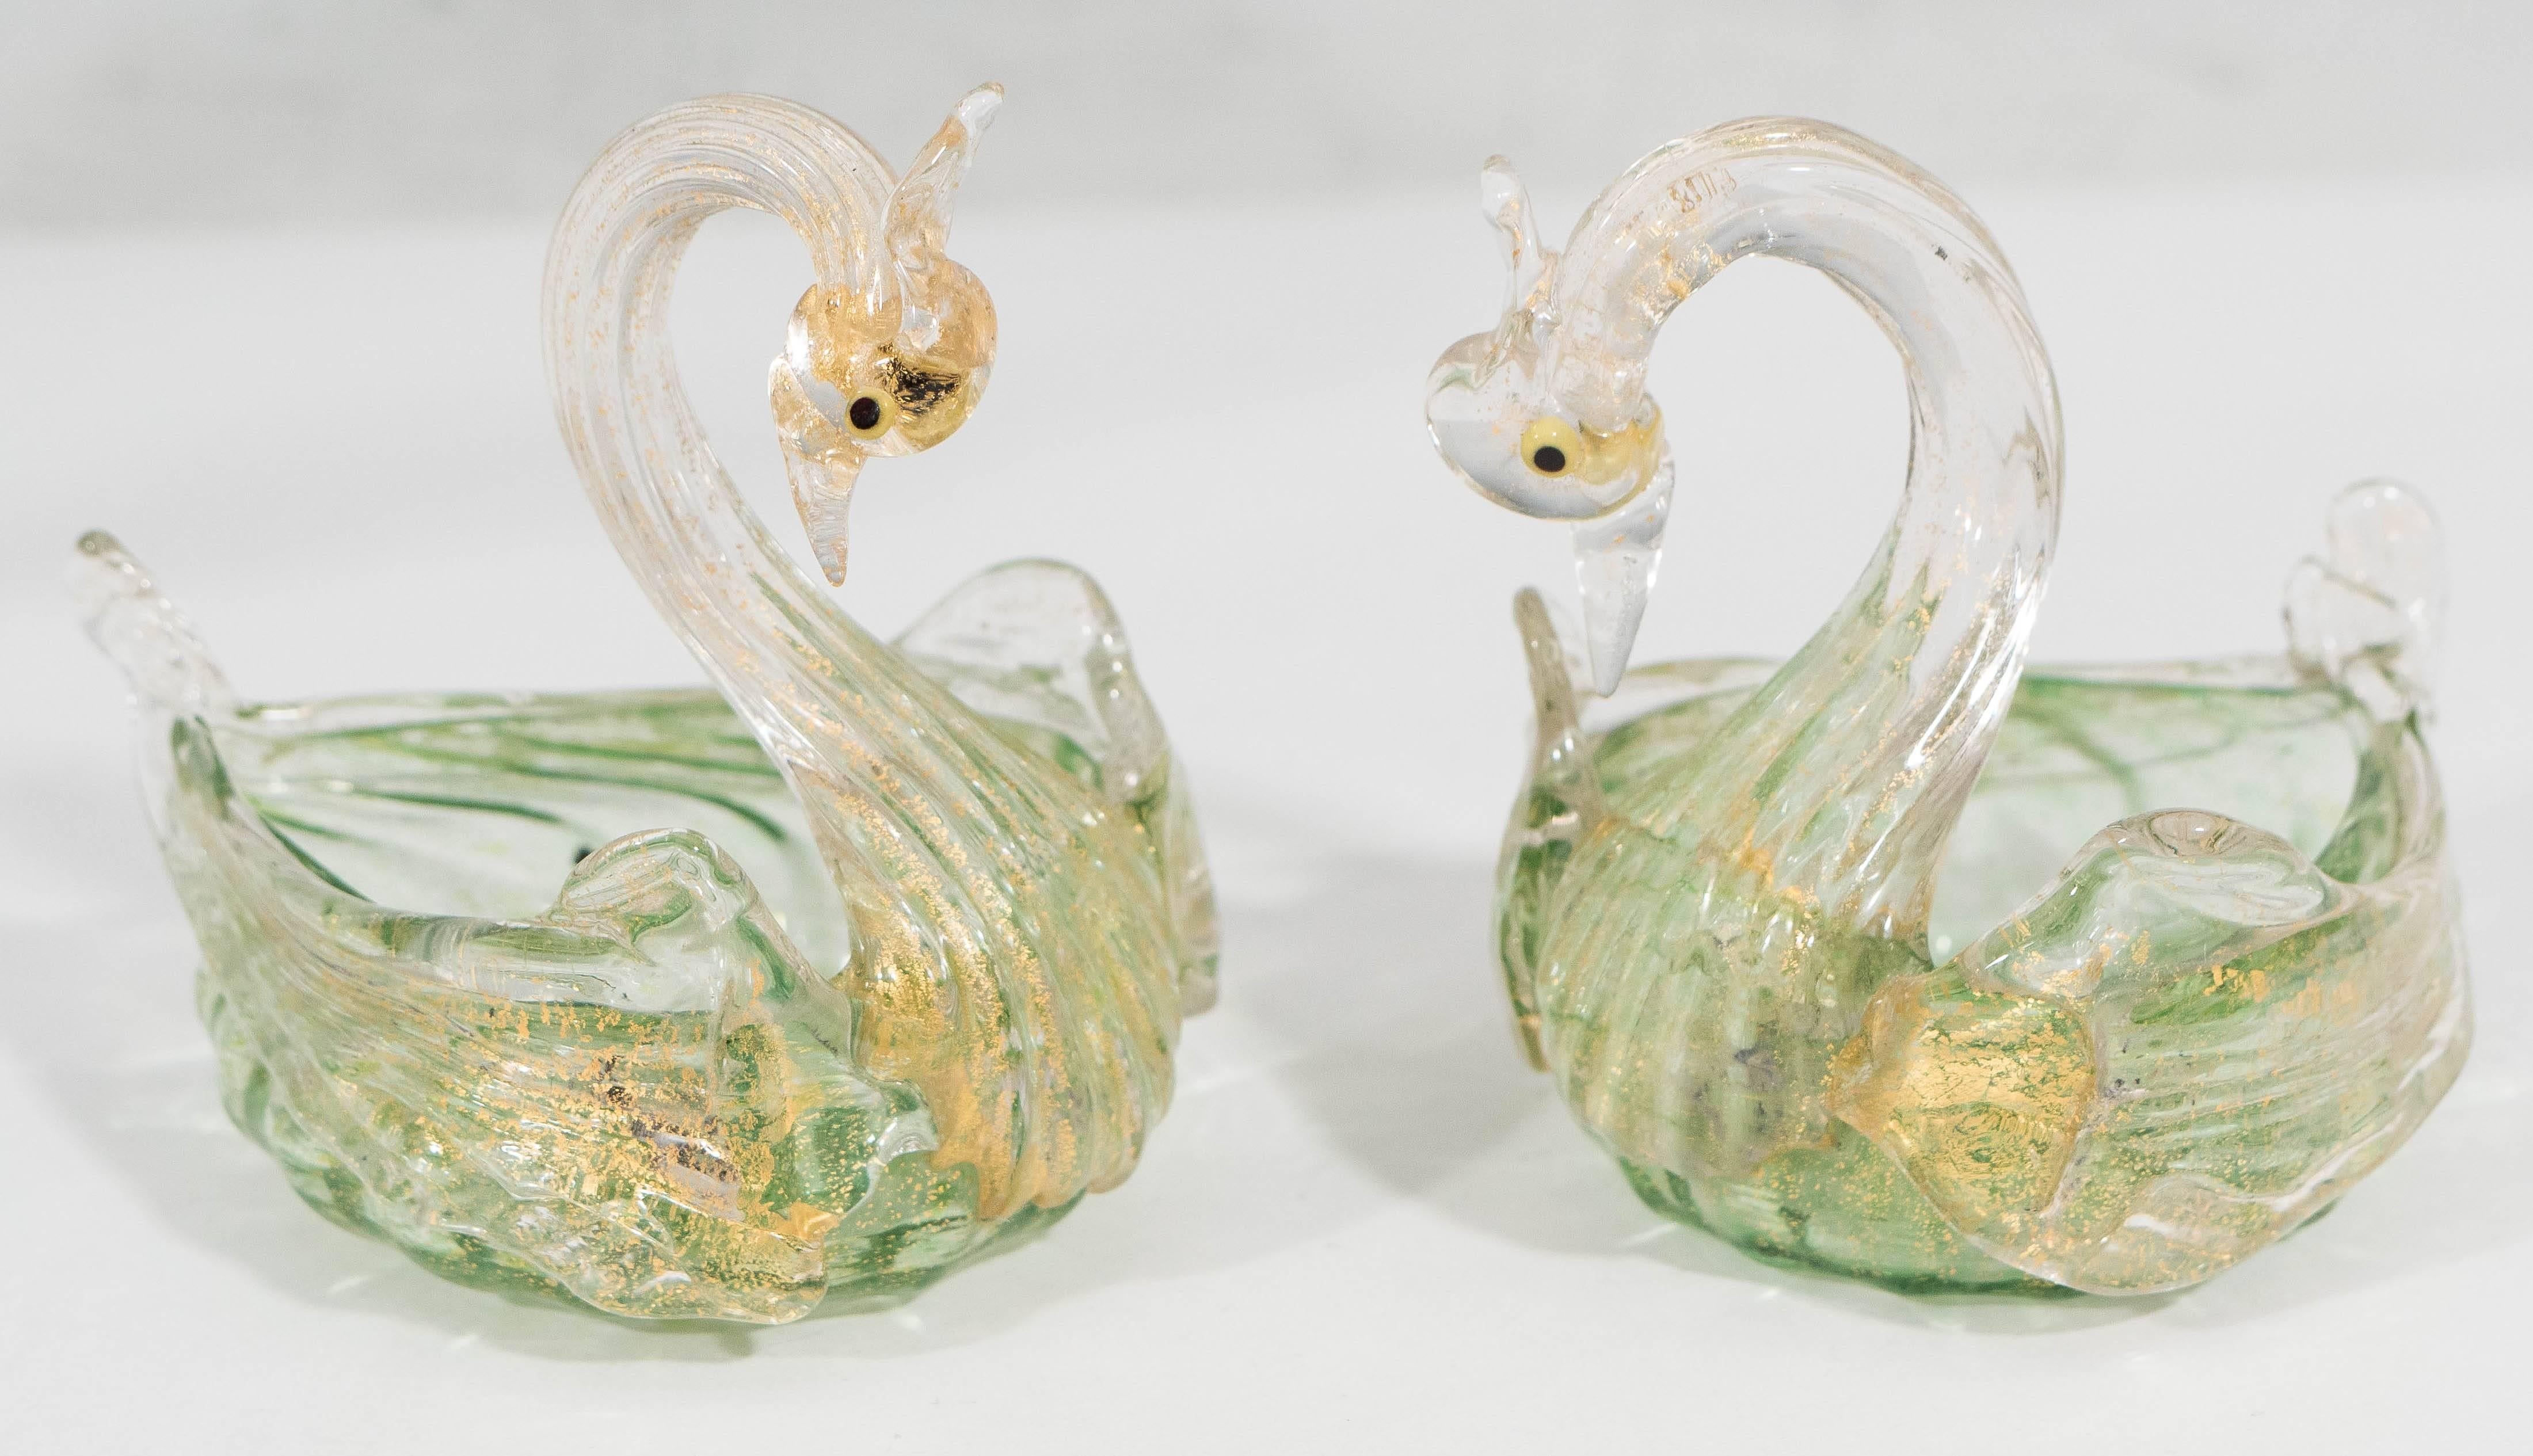 Ein feines Arrangement von mundgeblasenen Salviati-Gläsern in verschiedenen Grüntönen und mit Goldflecken, darunter eine erhabene Schale mit einem Schwan als Stiel, mit geriffeltem, gewirbeltem Rand und rundem Sockel sowie ein Paar passender,